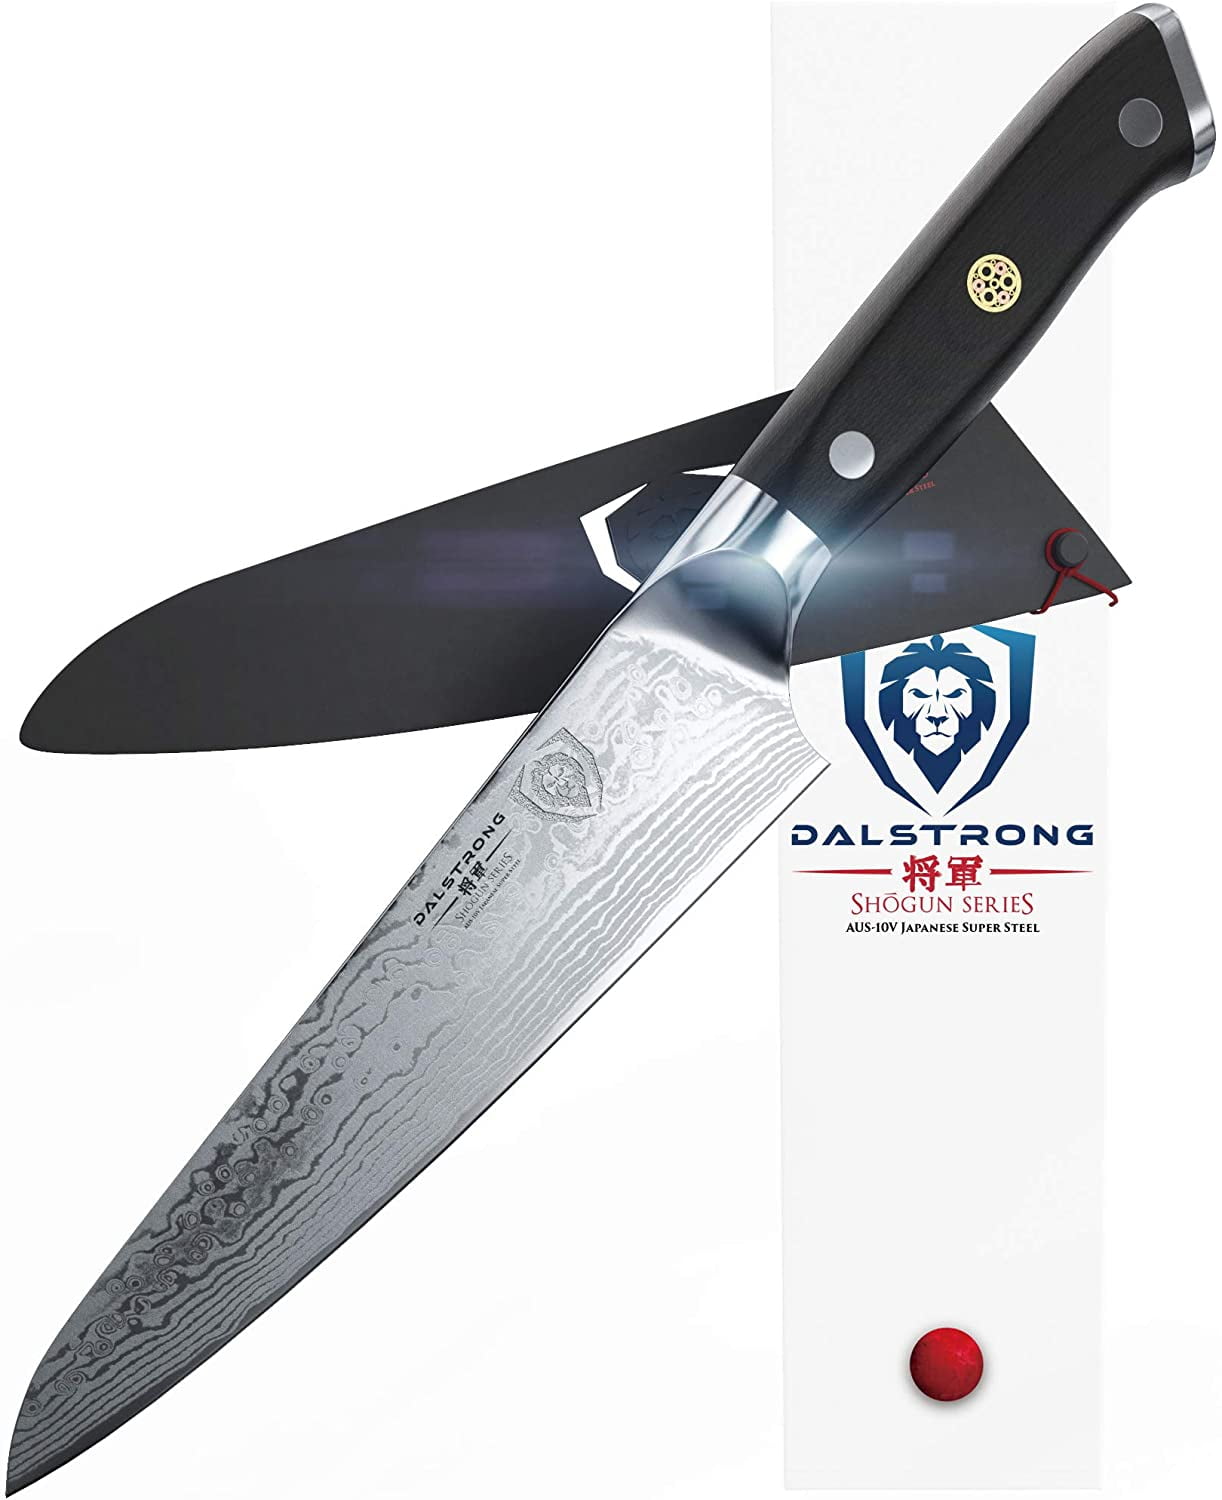 DALSTRONG Carving Knife & Fork Set - 9 inch - Shogun Series ELITE -  Damascus Carving Set - Japanese AUS-10V Super Steel Kitchen Knife - BBQ Set  